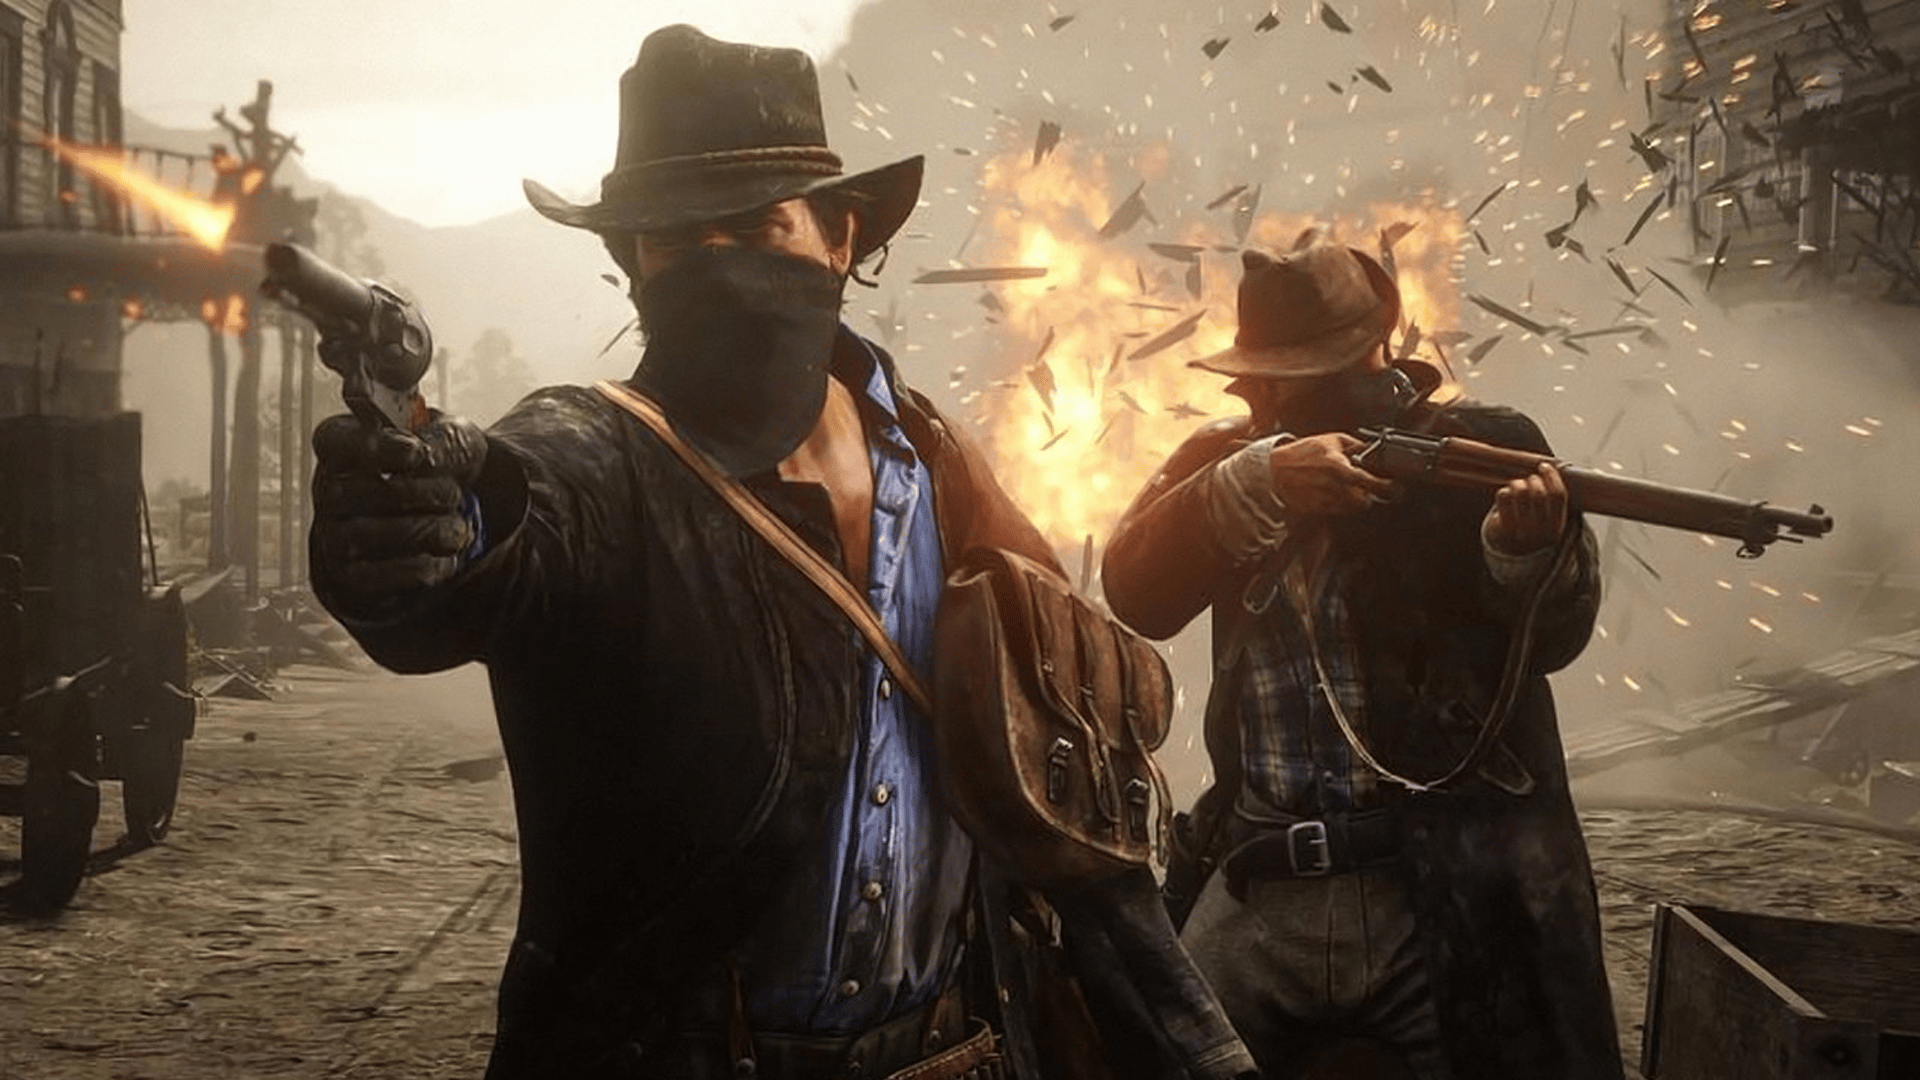 Red Dead Redemption 2 met les joueurs en colère, une polémique éclate